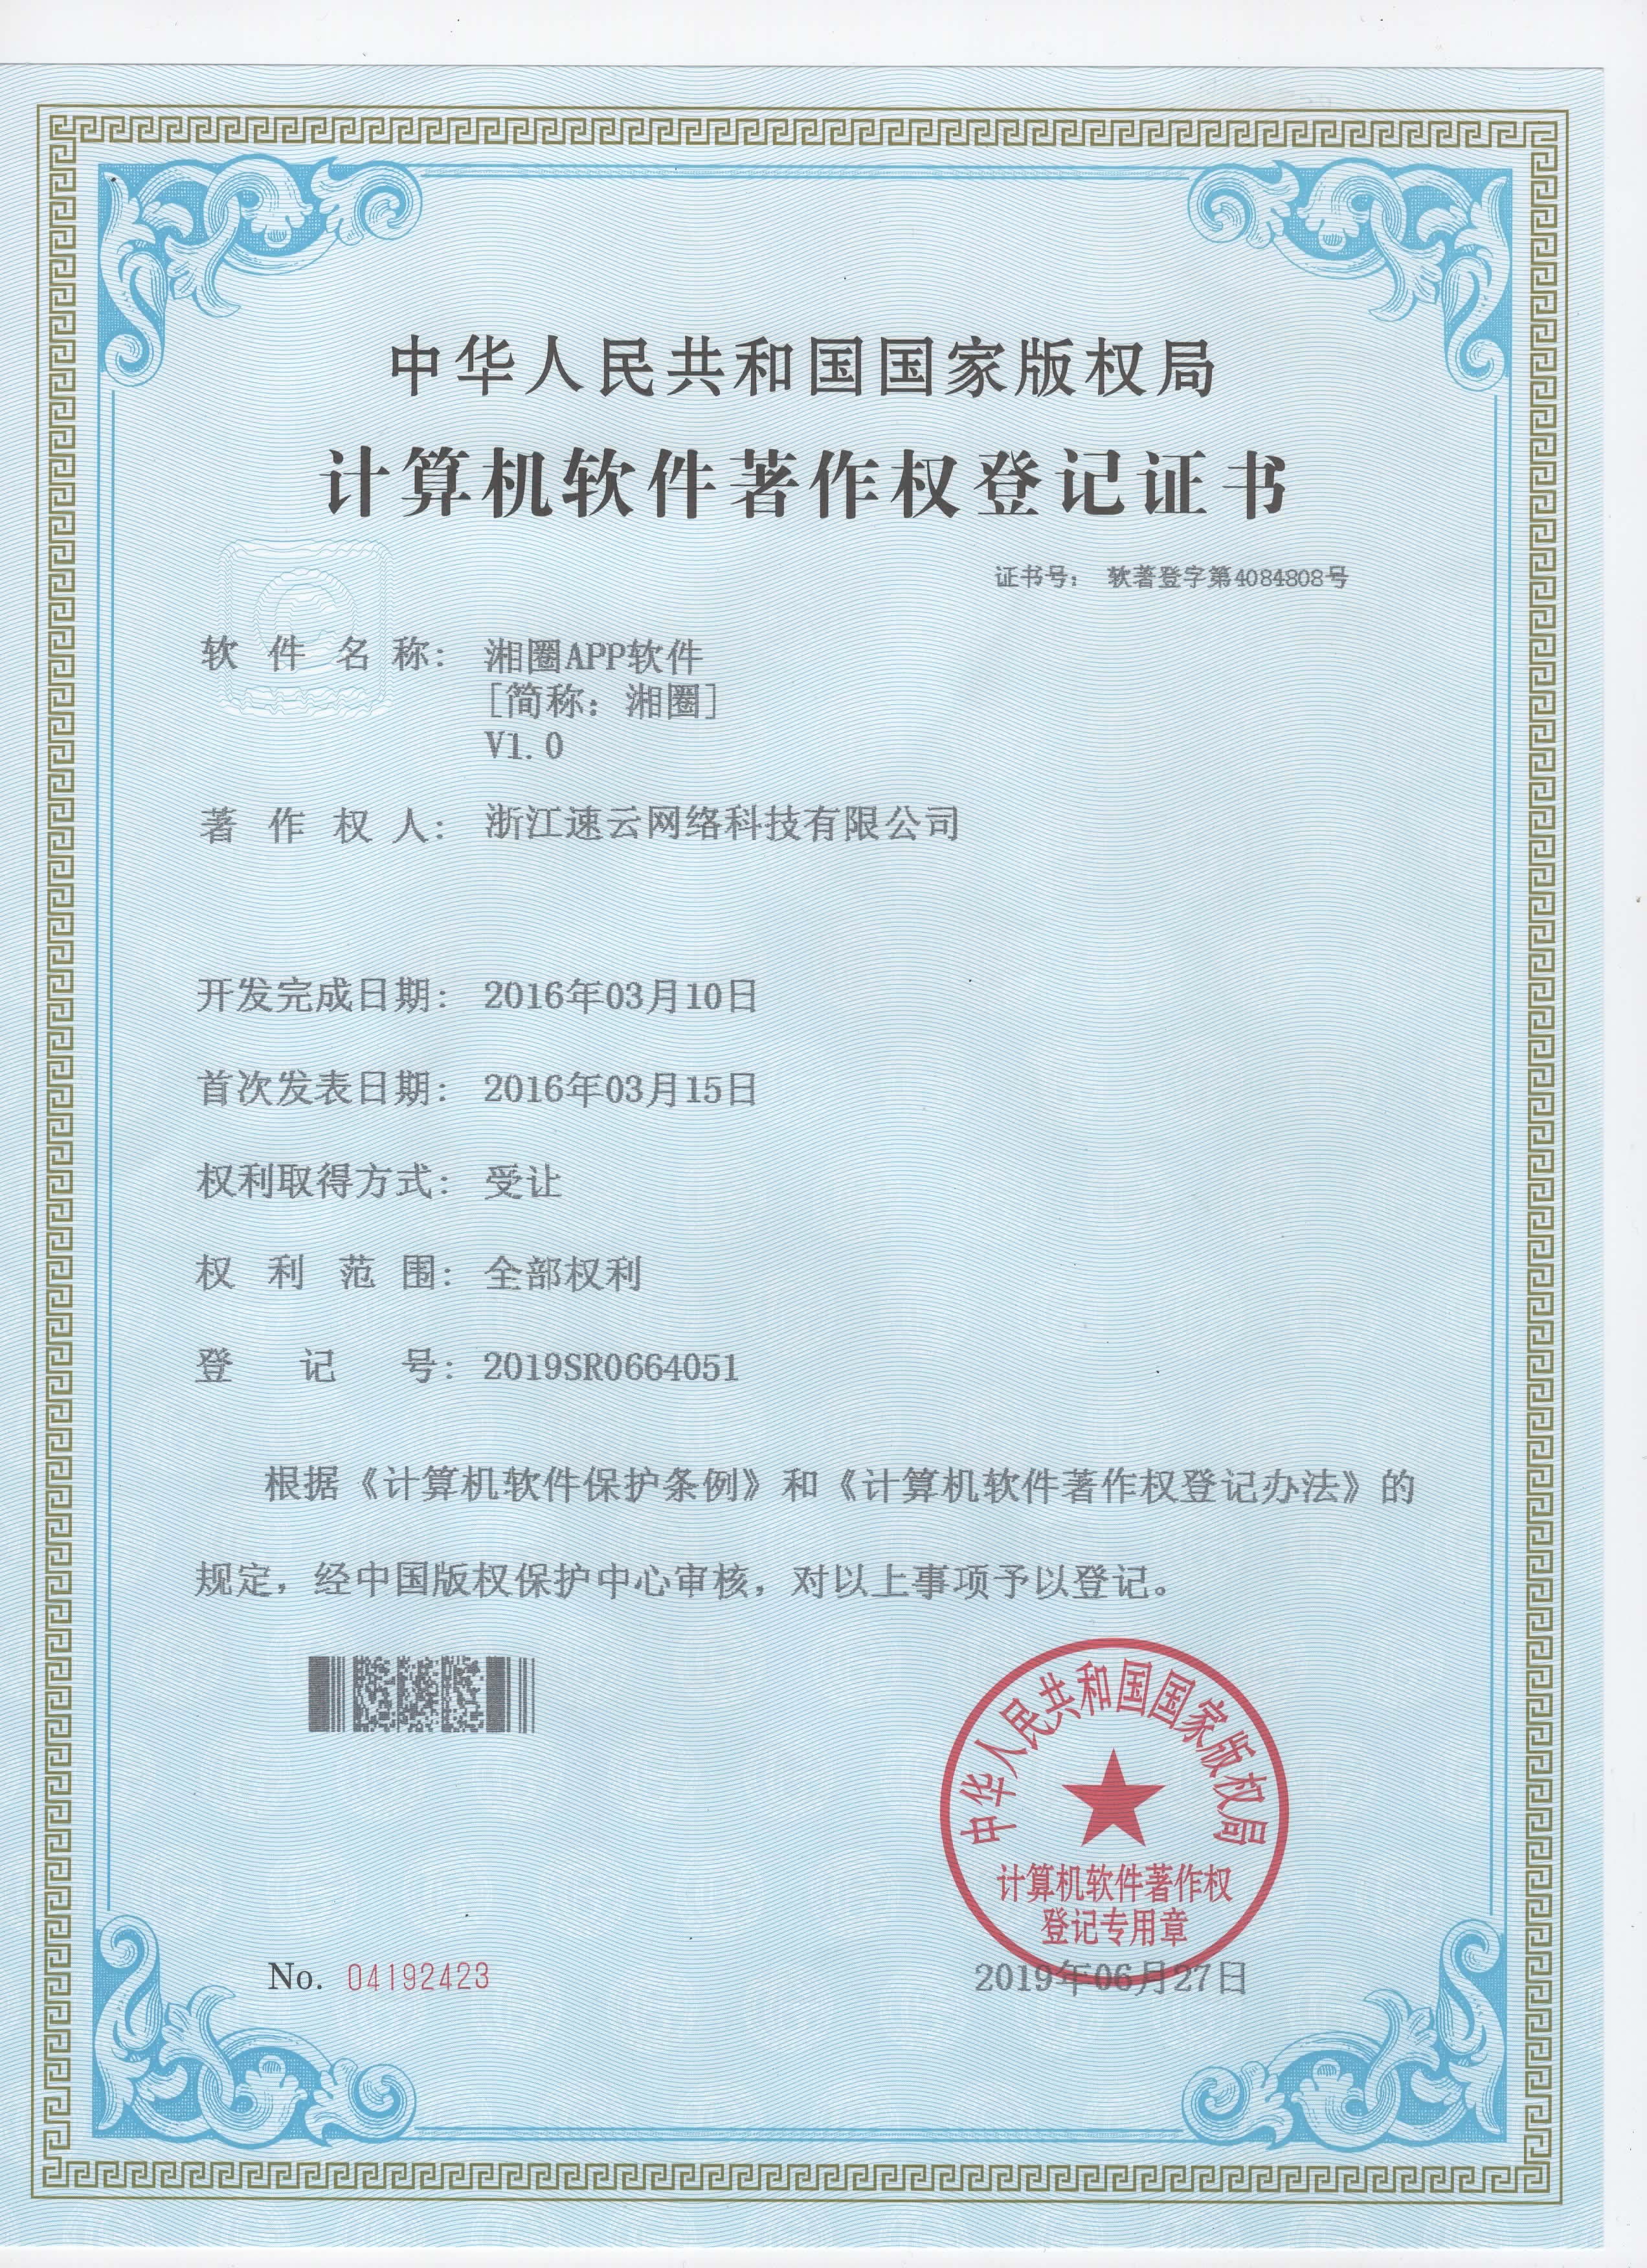 同乡社群平台“湘圈”APP著作权证书